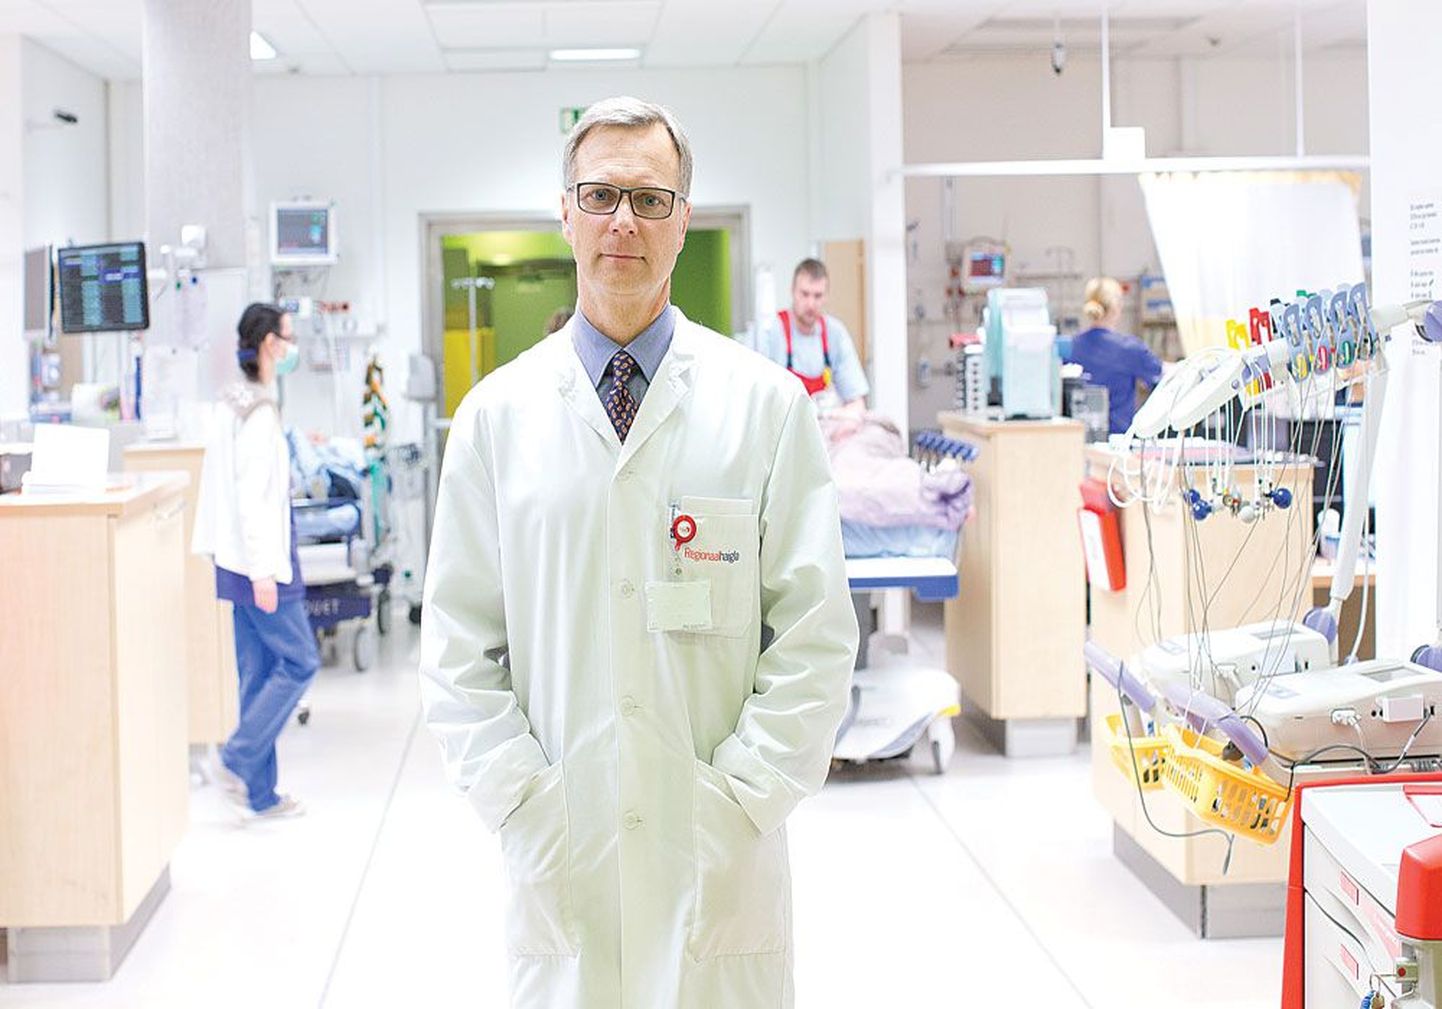 Тверд как скала: профессор Пеэп Тальвинг в своей стихии, в отделении экстренной медицины Северо-Эстонской 
региональной больницы.